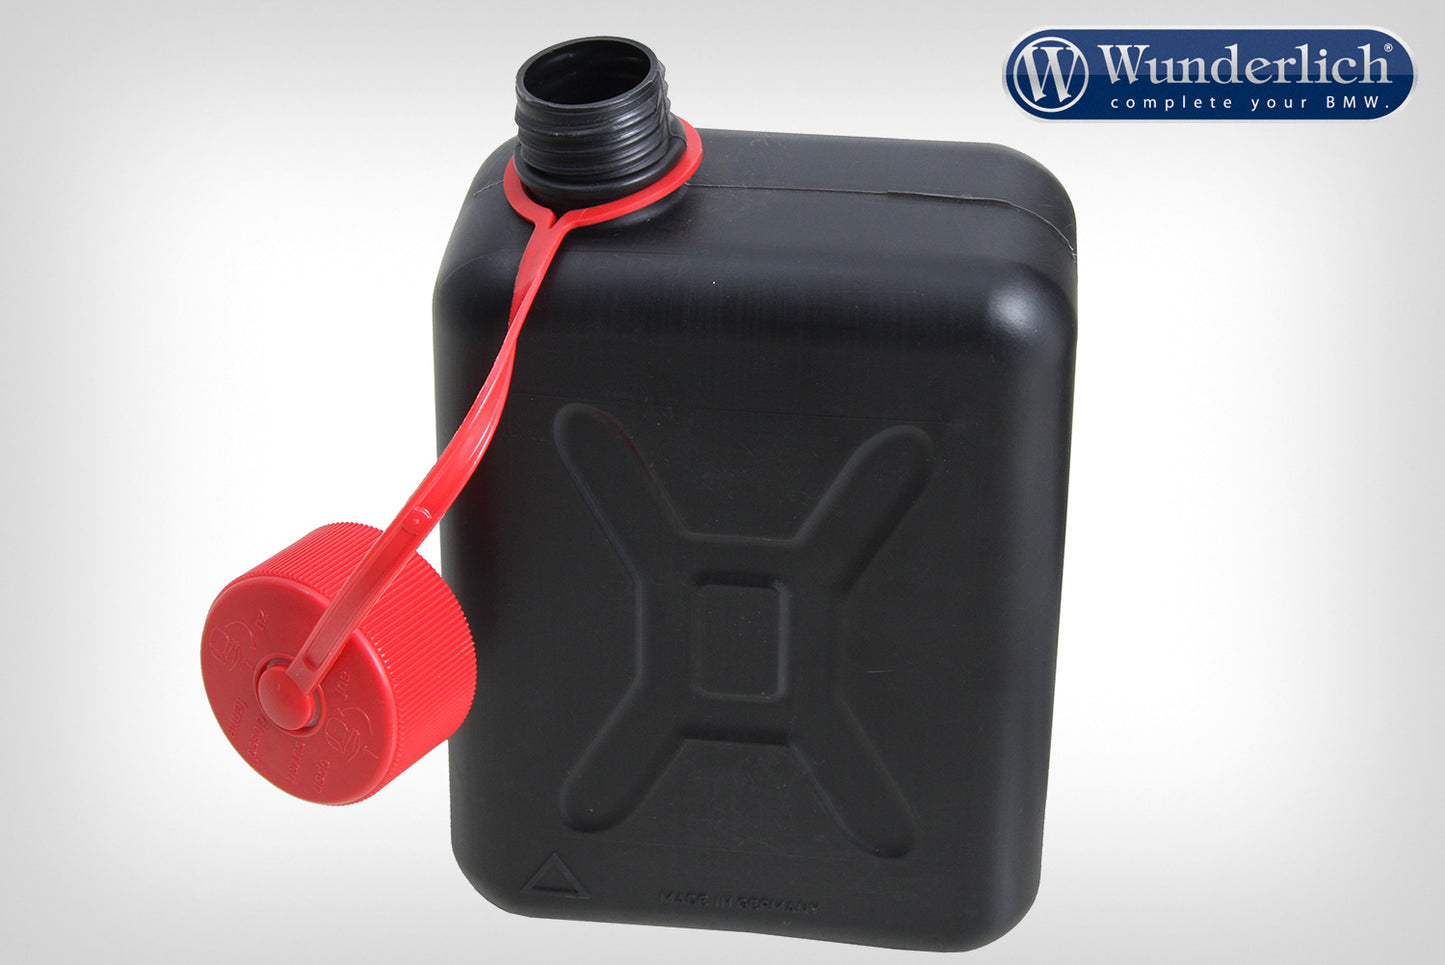 Hepco & Becker Reserve canister incl. holder for aluminium case - 2000ml - black